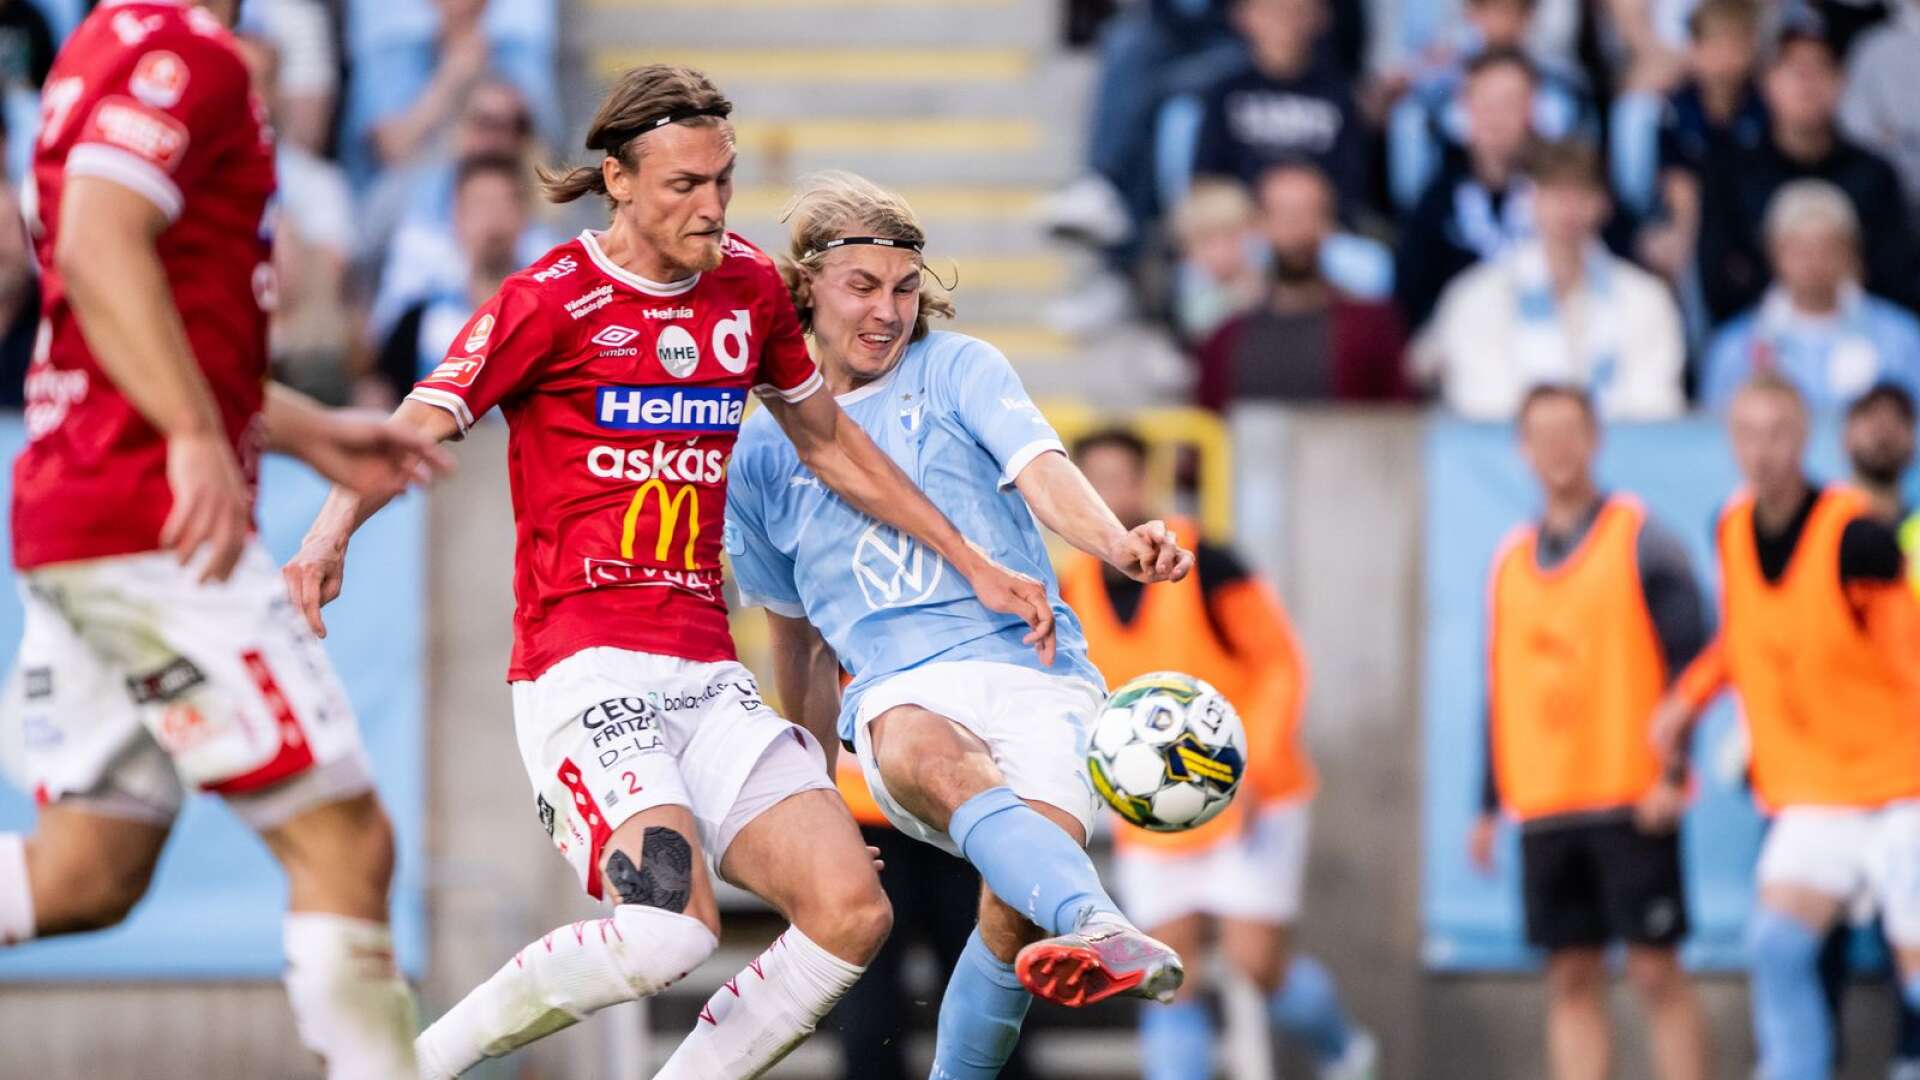 Malmö med Sebastian Nanasi tog en storseger hemma mot Degerfors med Gustav Granath.